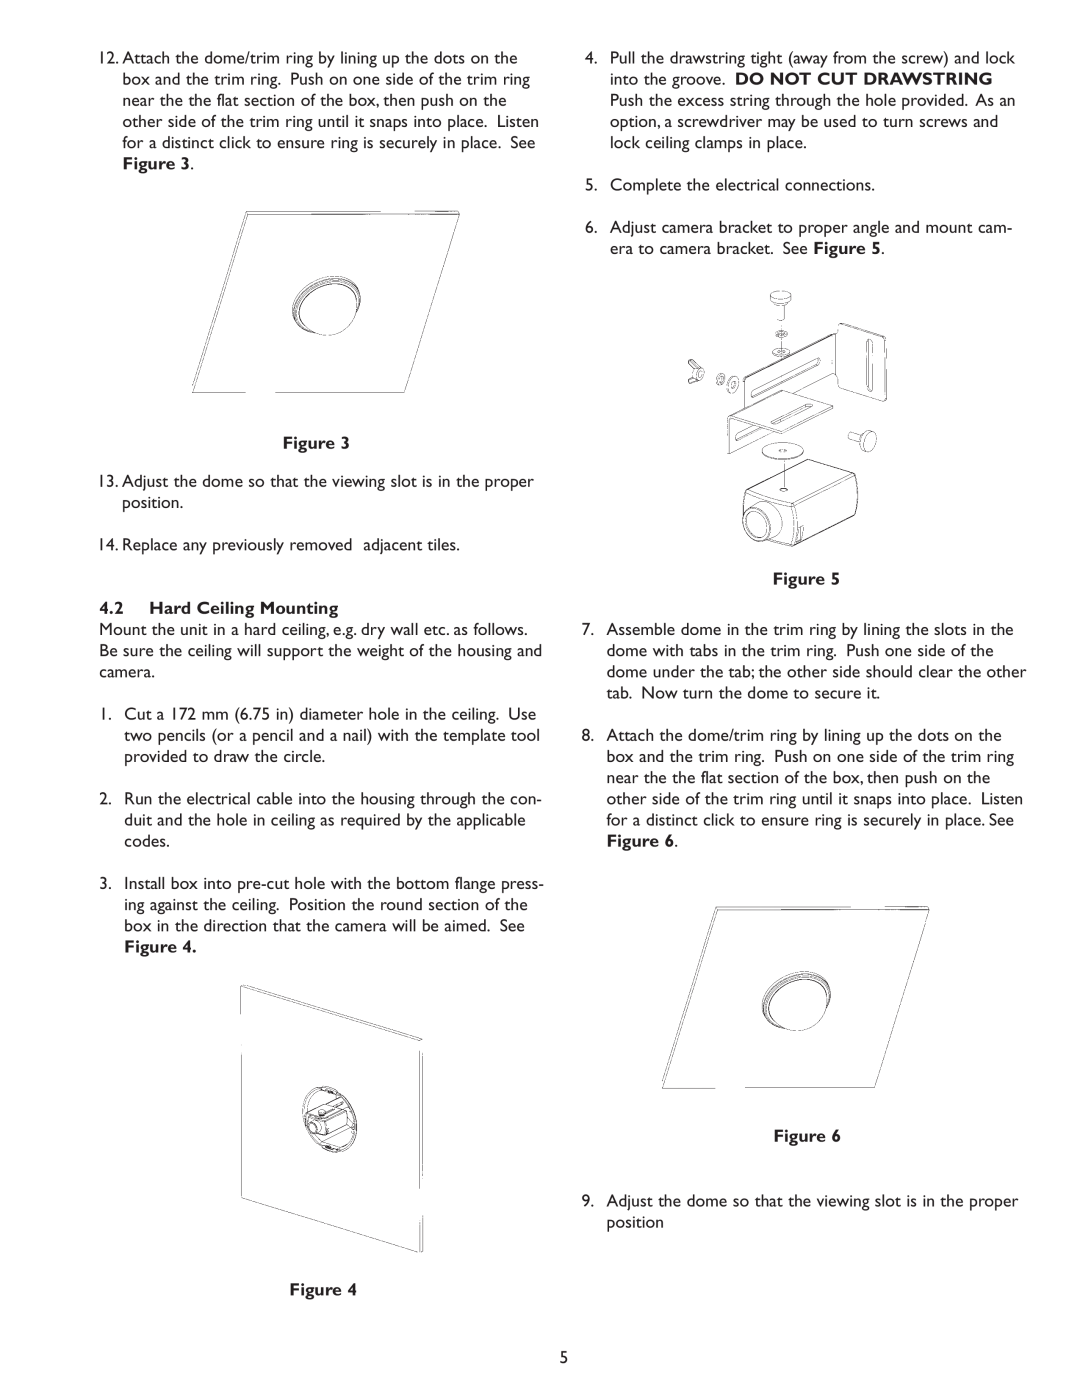 Sanyo VSE-6300 instruction manual 4.2Hard Ceiling Mounting, Figure Figure 